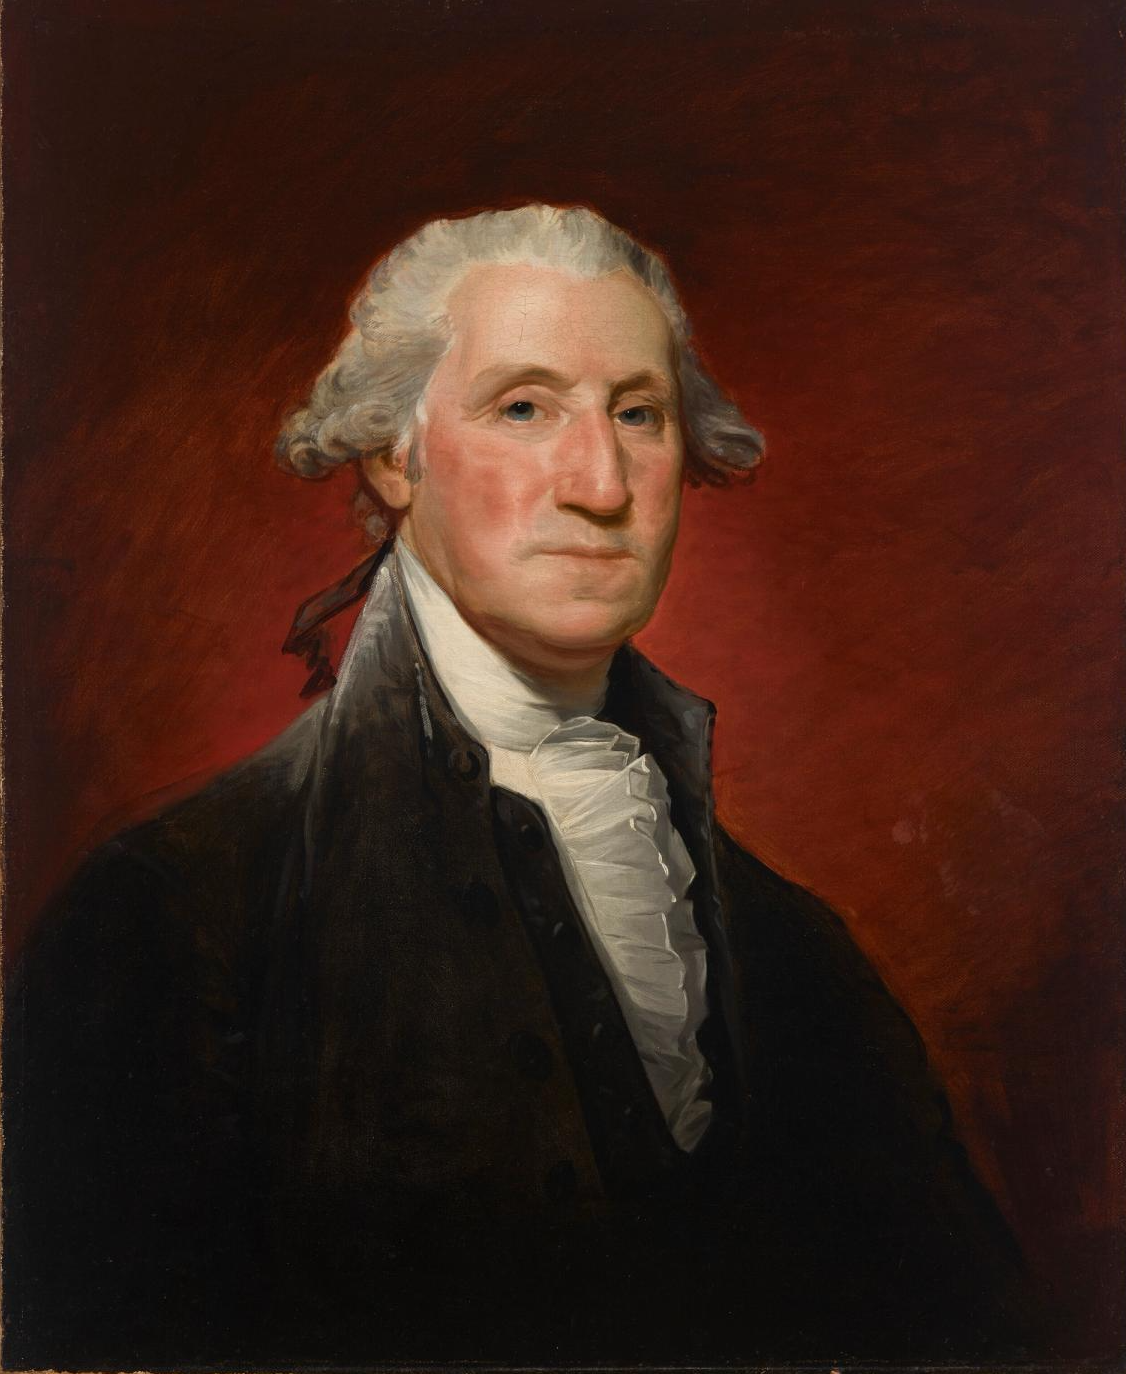 ジョージ・ワシントンの肖像画をメトロポリタン美術館が売却へ。新たな作品購入のための資金調達